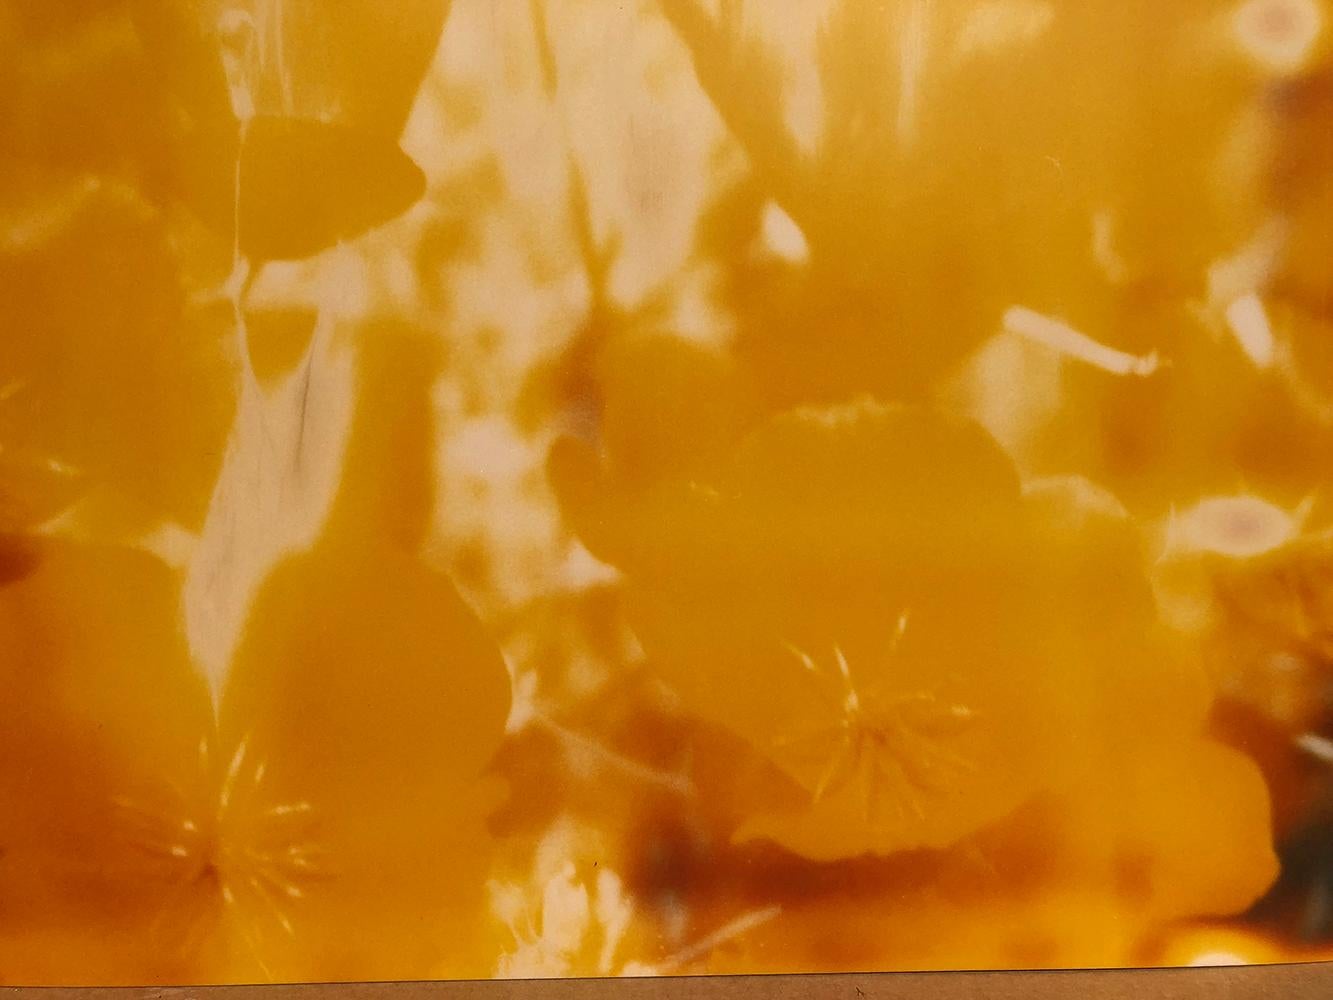 Gelbe Blume (The Last Picture Show) - 2005

128x125cm, 
Auflage von 5, 
analoger C-Print, basierend auf einem Polaroid,
von der Künstlerin handgedruckt auf Fuji Crystal Archive Papier. (matt)  
Künstlerinventar 672. 
Nicht montiert.

Die 